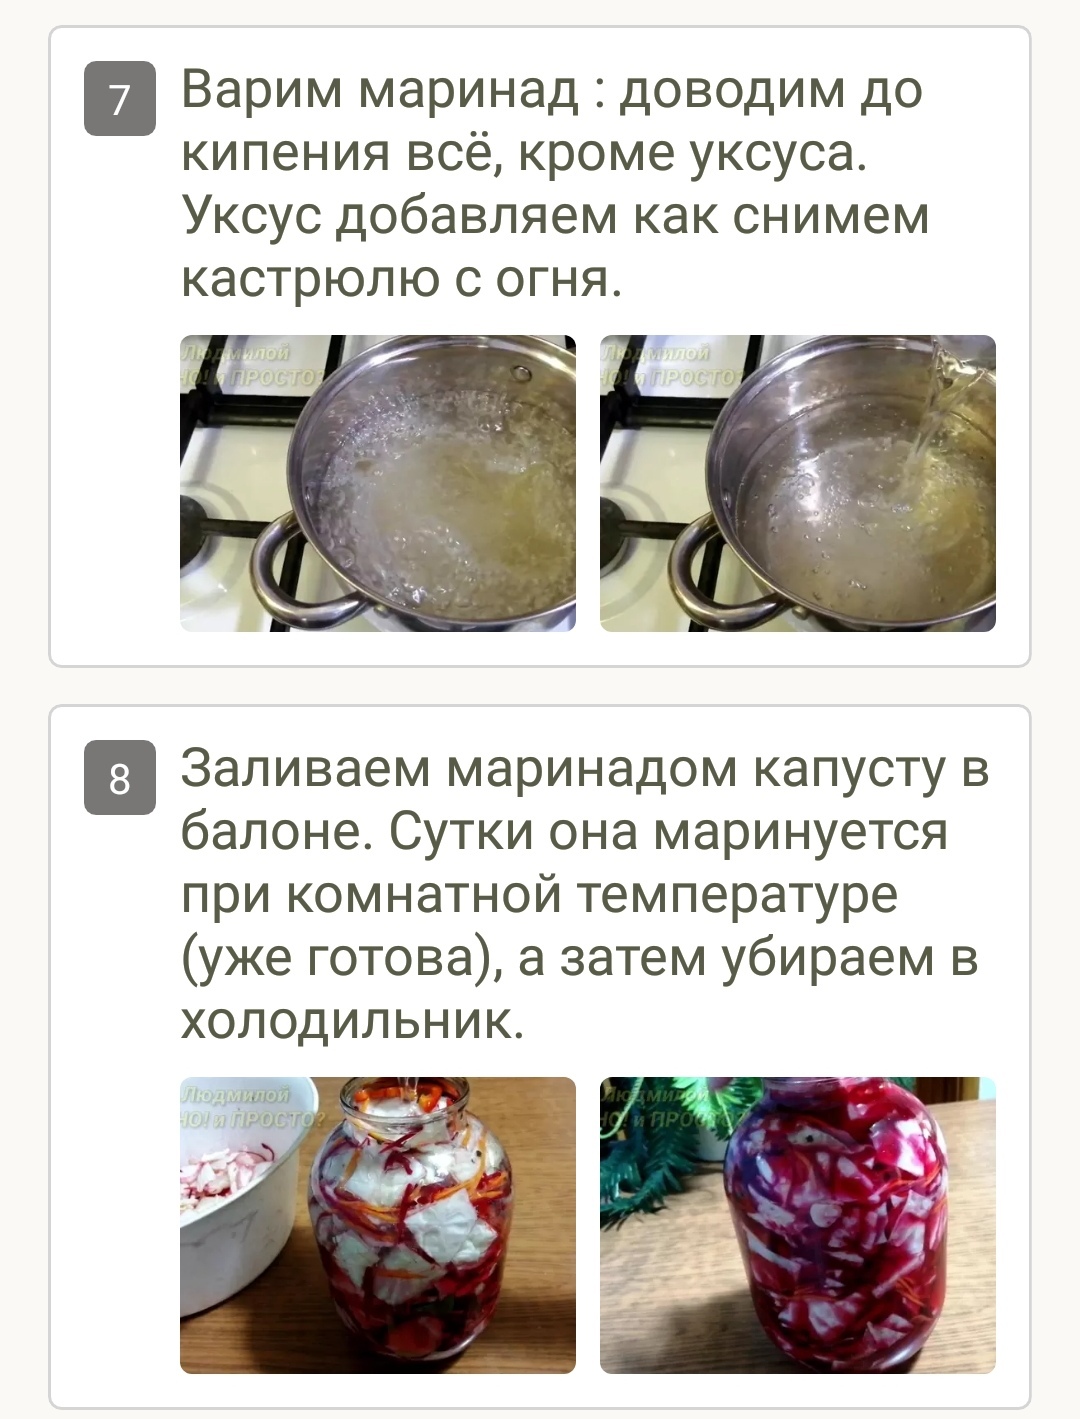 Как замариновать капусту со свеклой: рецепт быстрого приготовления